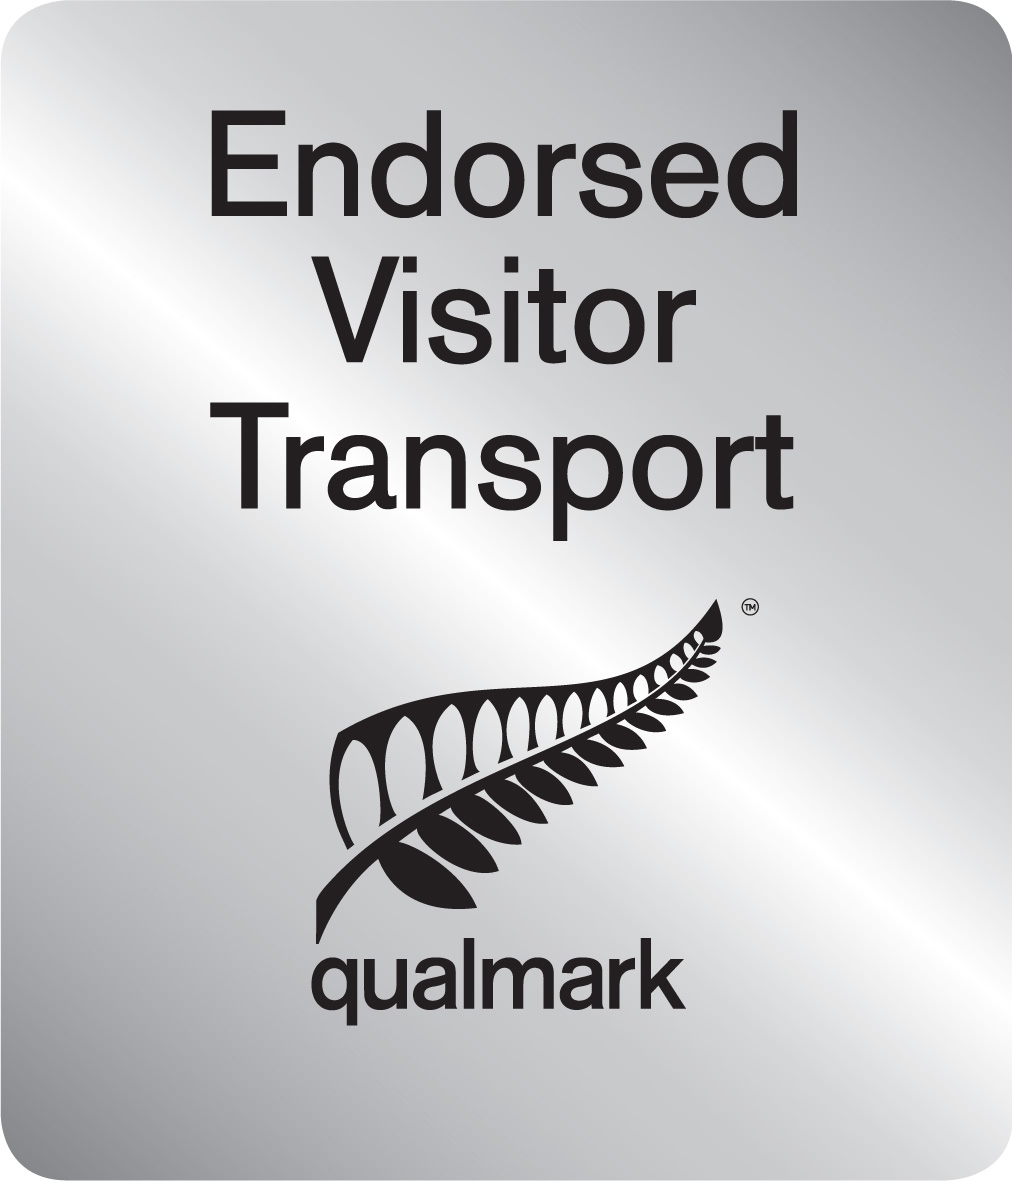 Endorsed visitor transport Qualmark